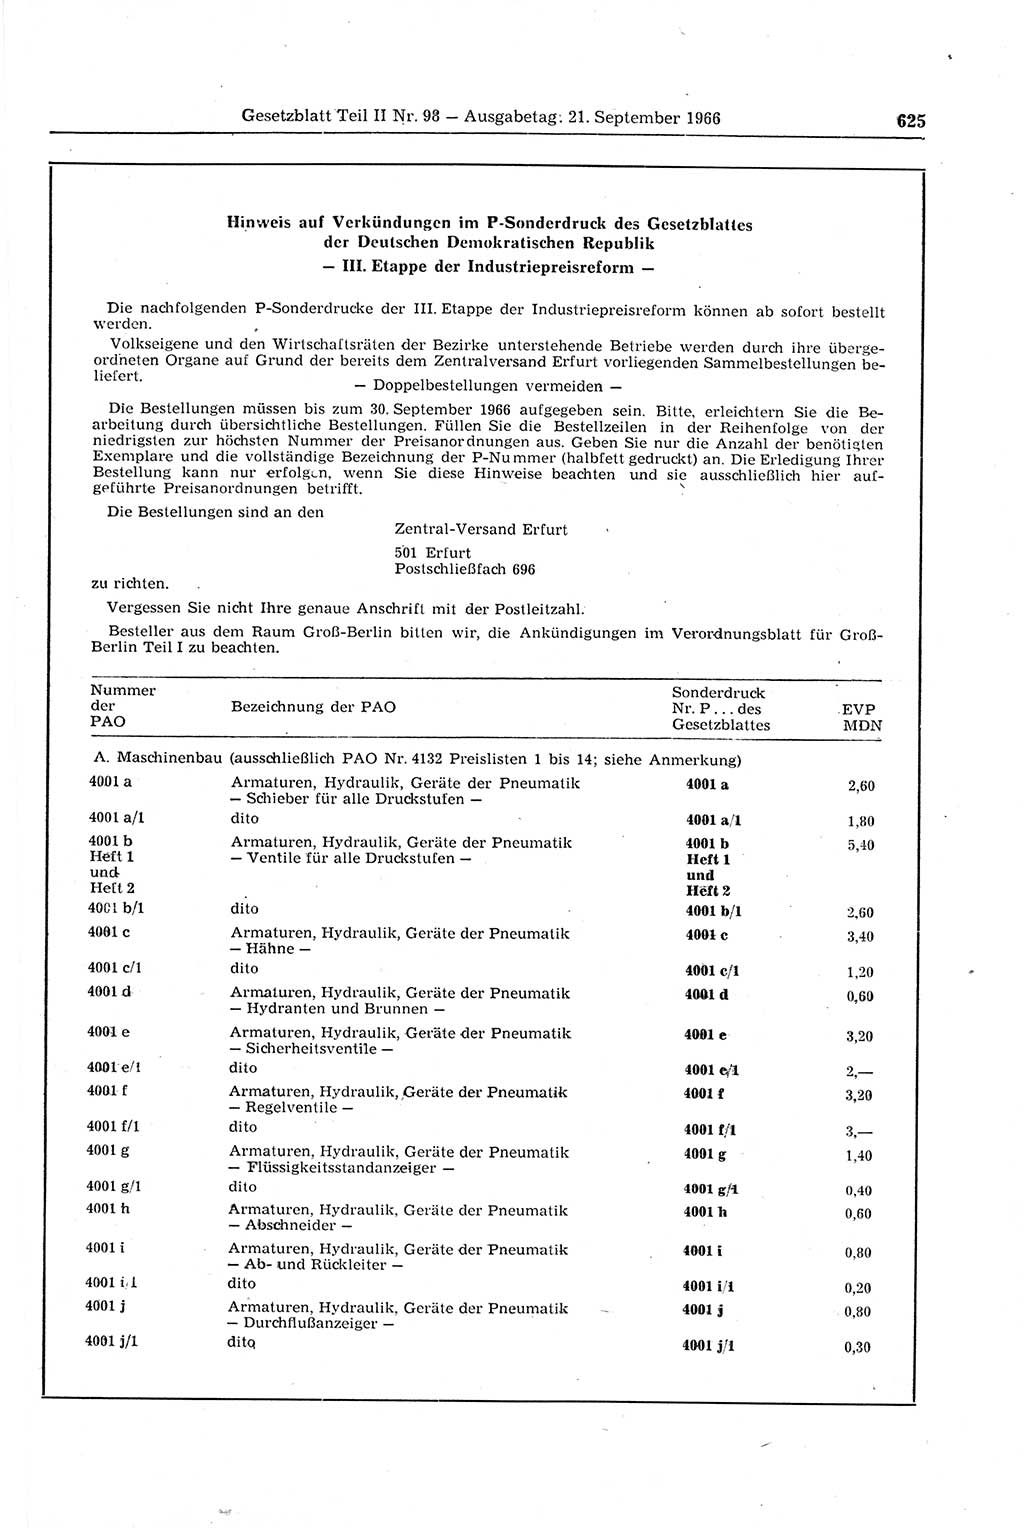 Gesetzblatt (GBl.) der Deutschen Demokratischen Republik (DDR) Teil ⅠⅠ 1966, Seite 625 (GBl. DDR ⅠⅠ 1966, S. 625)